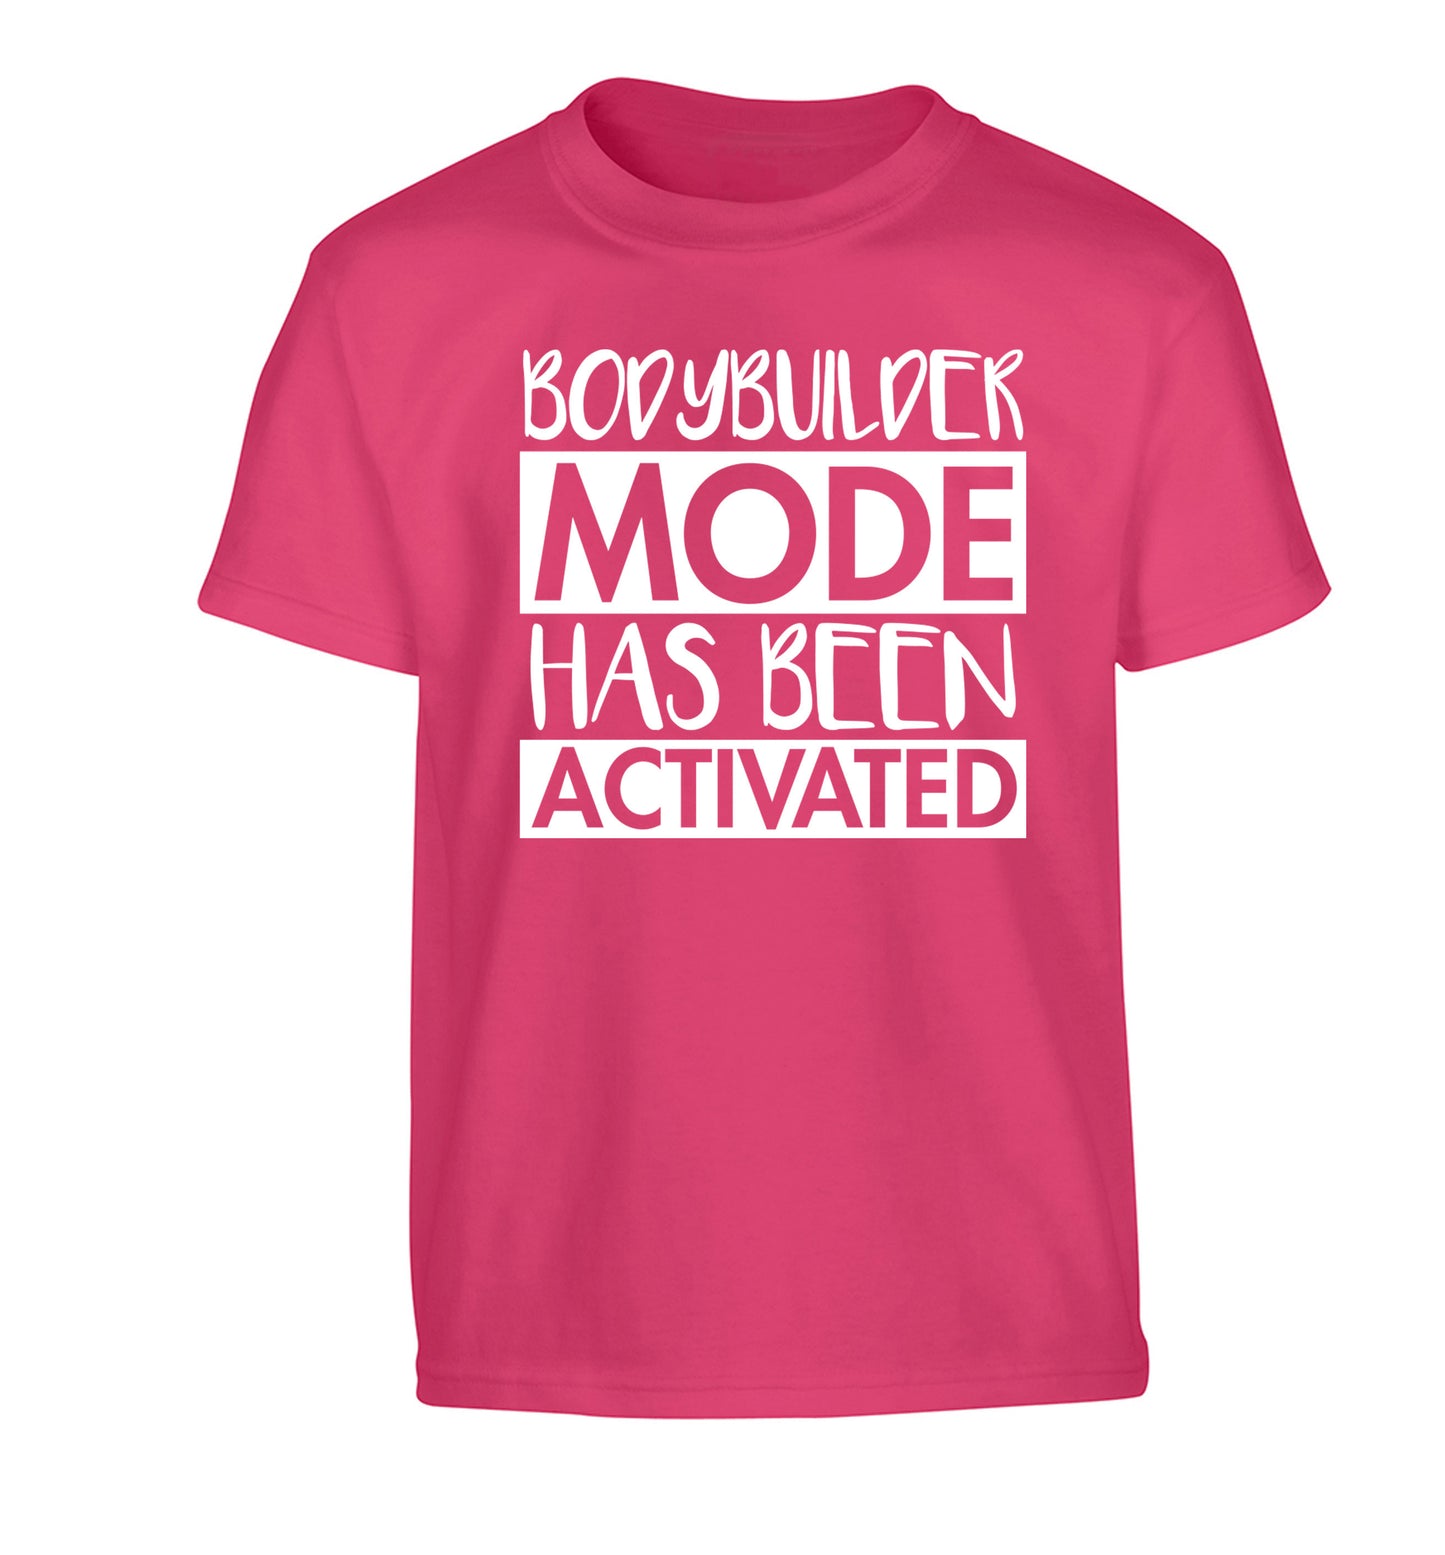 Bodybuilder mode activated Children's pink Tshirt 12-14 Years